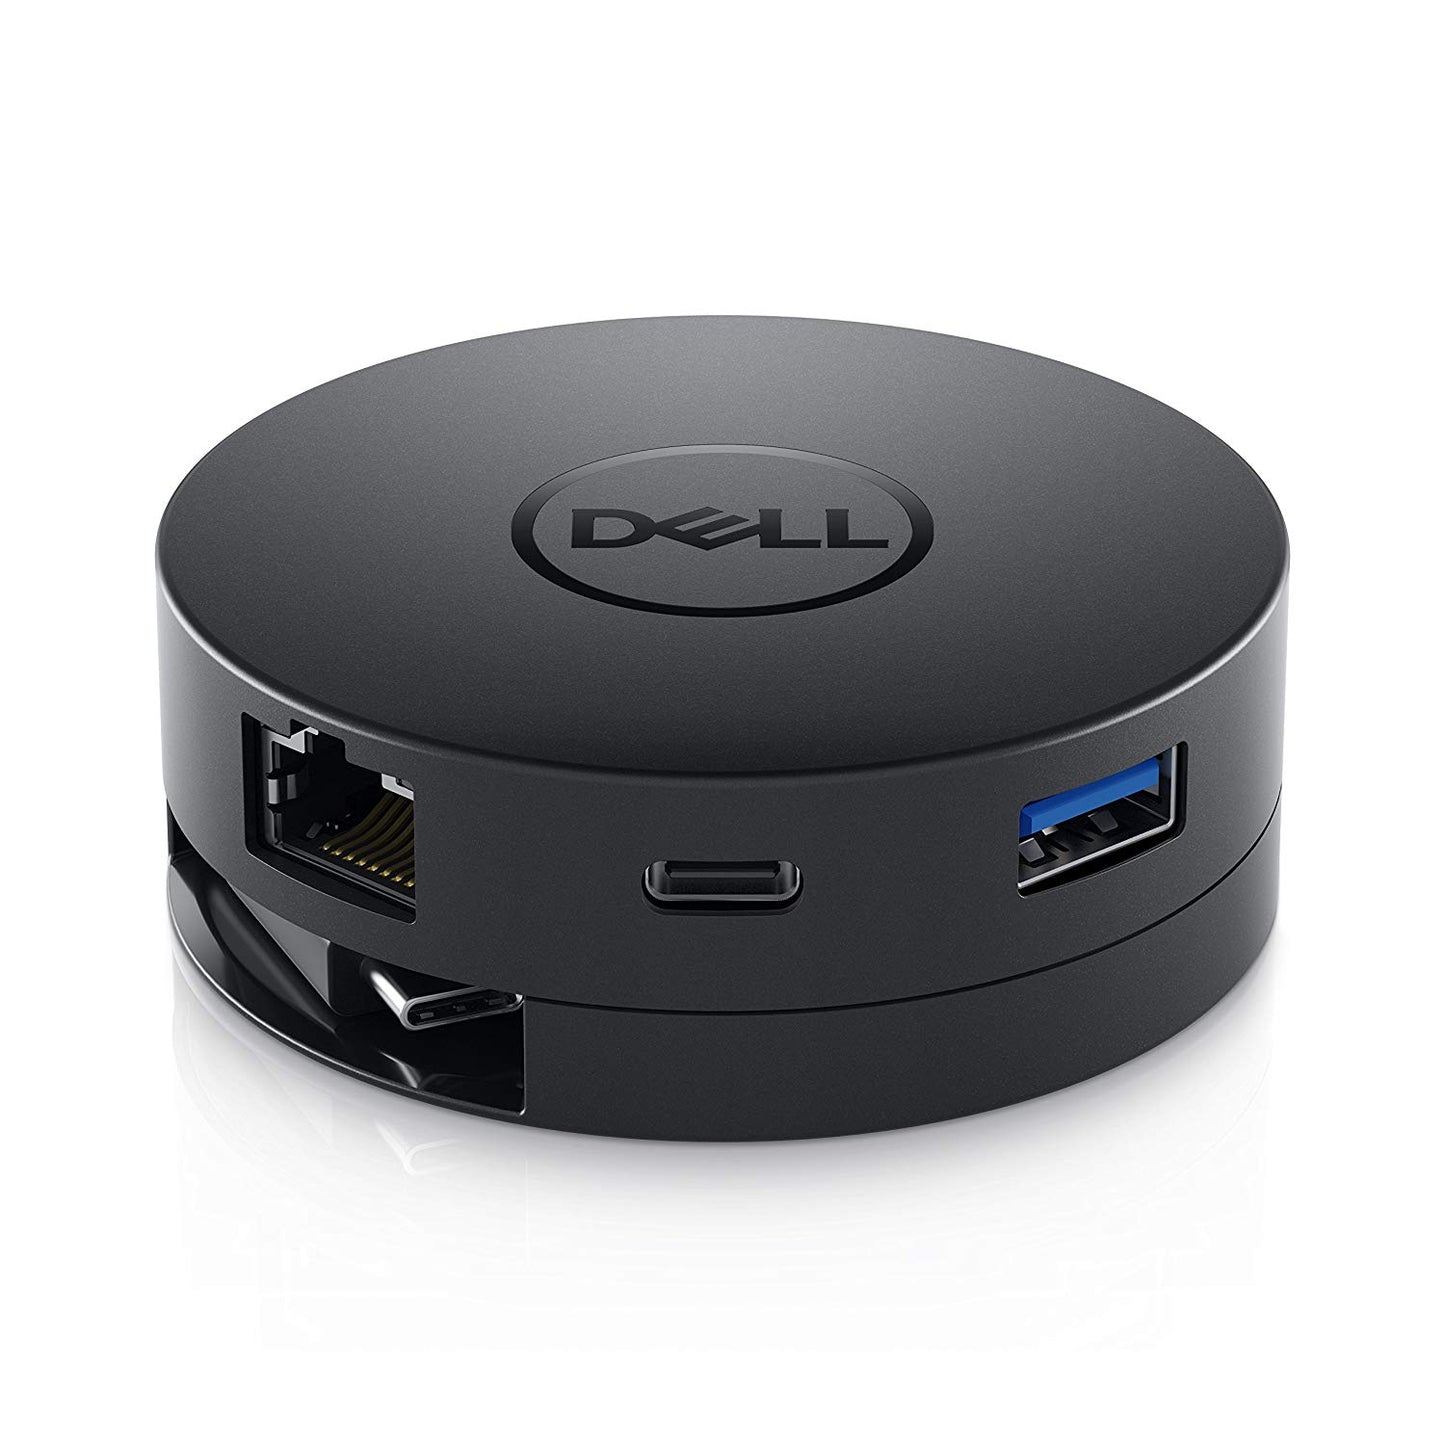 Dell USB-C Mobile Adapter (DA300)